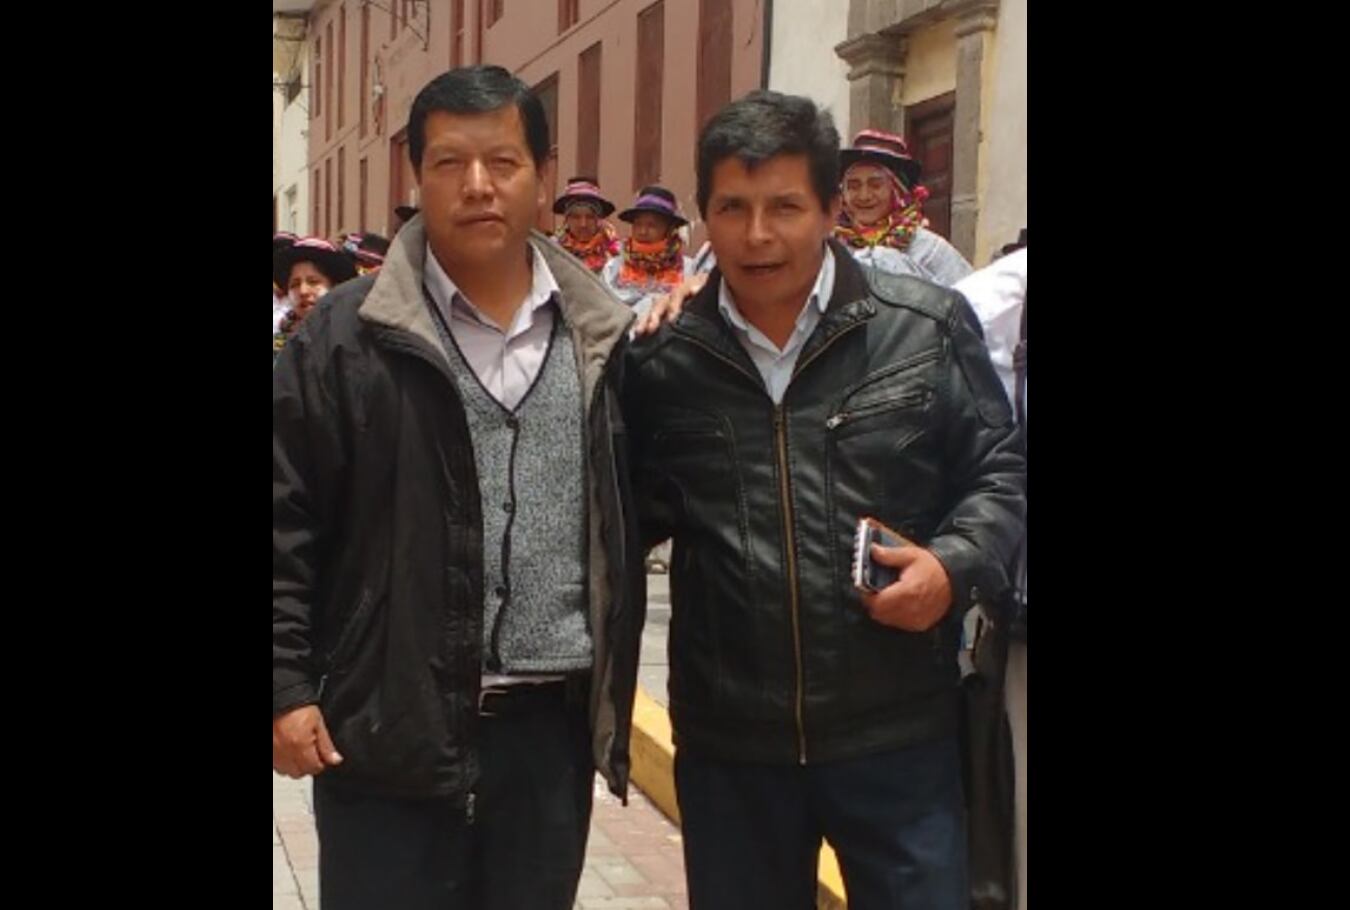 El virtual congresista Germán Tacuri (Ayacucho) reveló en su cuenta de Facebook que conoce a Pedro Castillo desde el 2003 y relata las veces que han participado juntos en huelgas magisteriales.